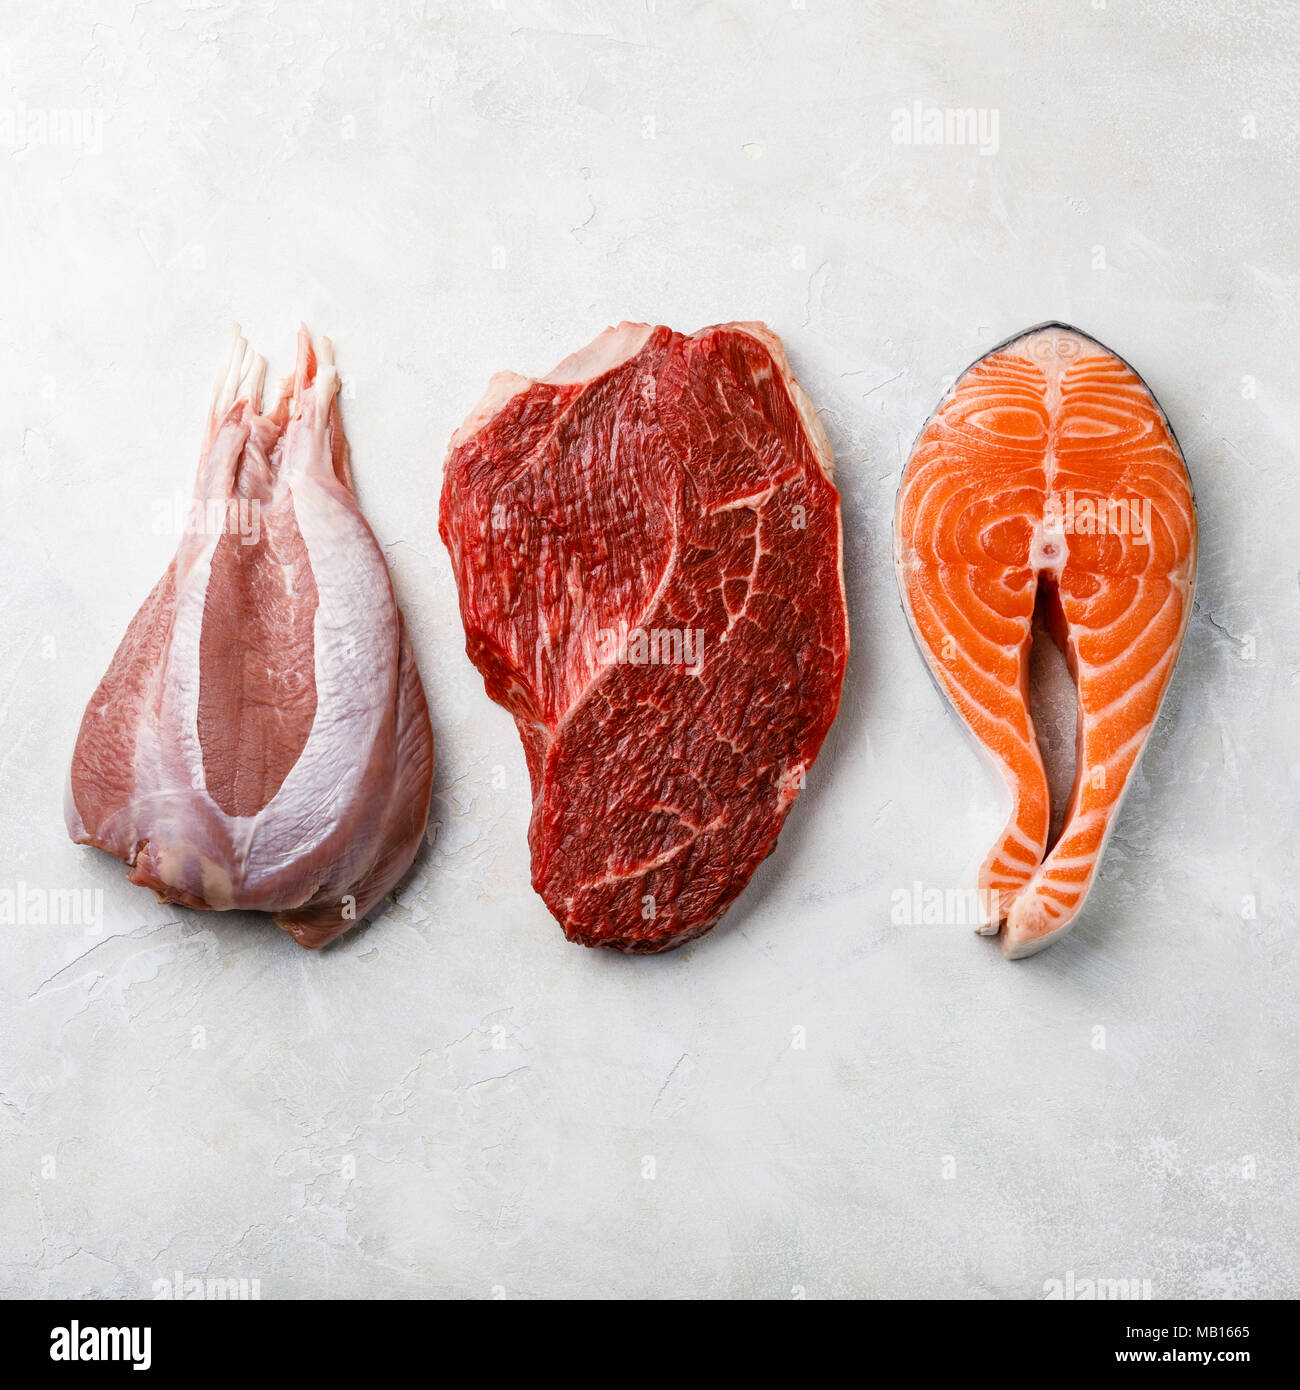 Rohkost Türkei Fleisch, Rindfleisch und Lachs Fisch Steak auf weiße strukturierte Hintergrund Stockfoto